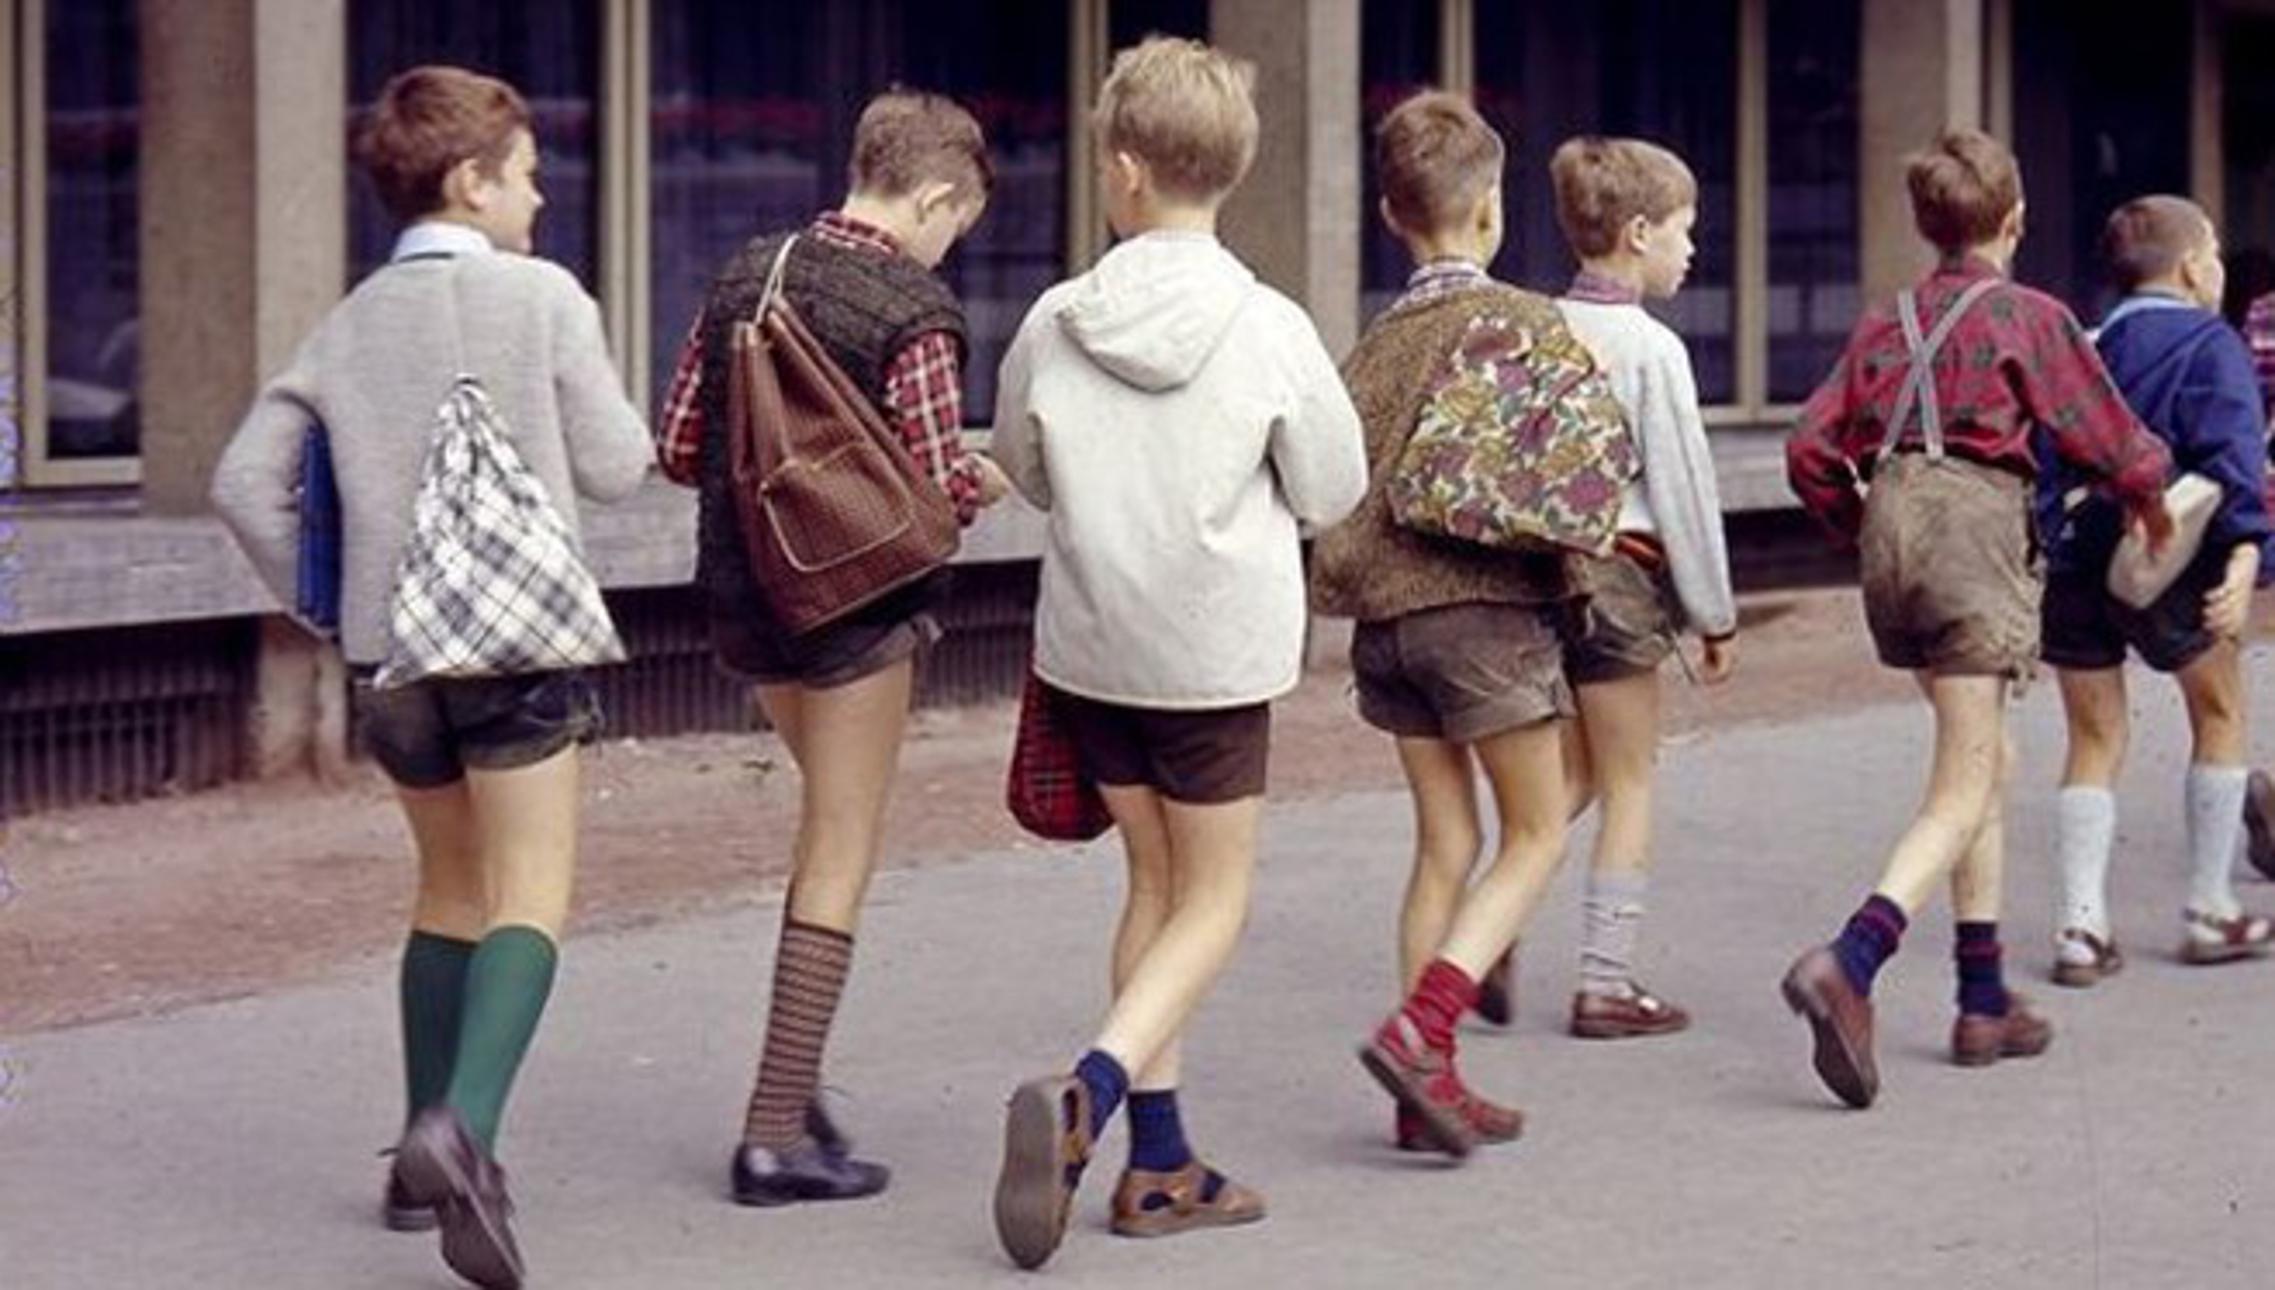 Uskoro, tako će izgledati i hrvatska djeca na njemačkim ulicama